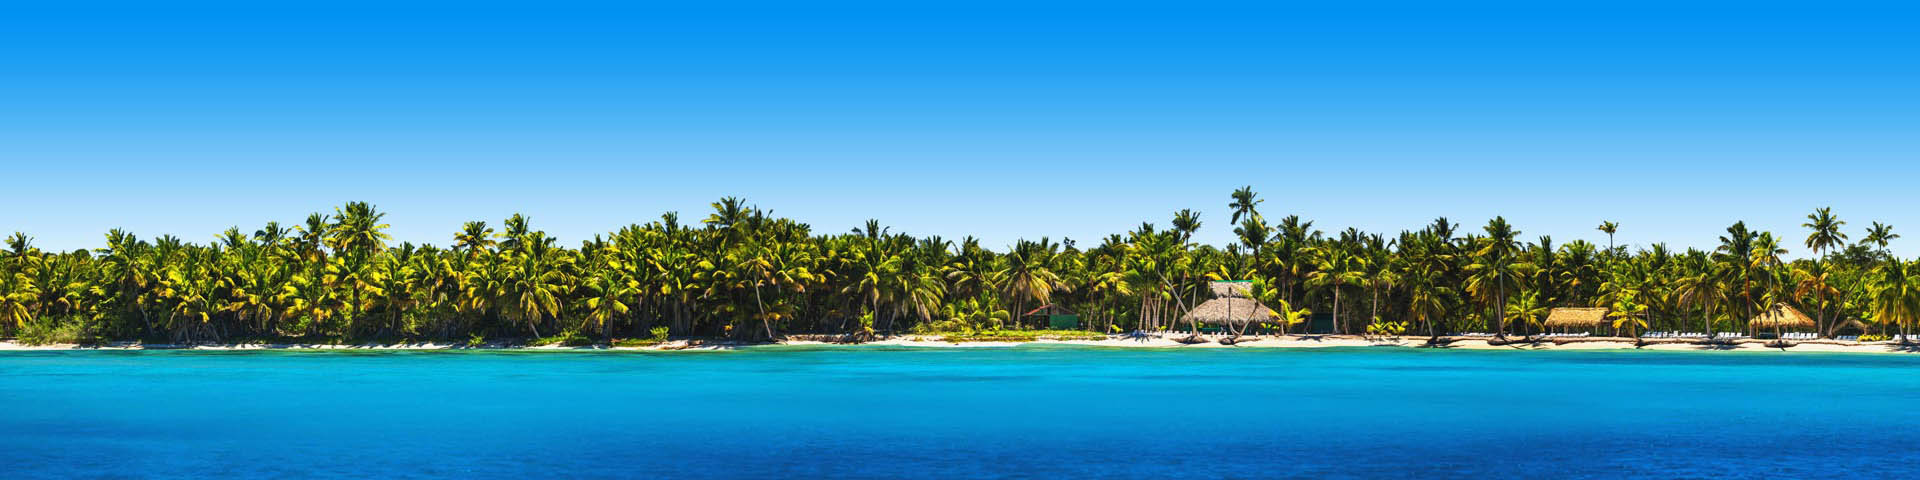 Strand vol met tropische palmbomen en een felblauwe zee aan de kust van de Dominicaanse Republiek